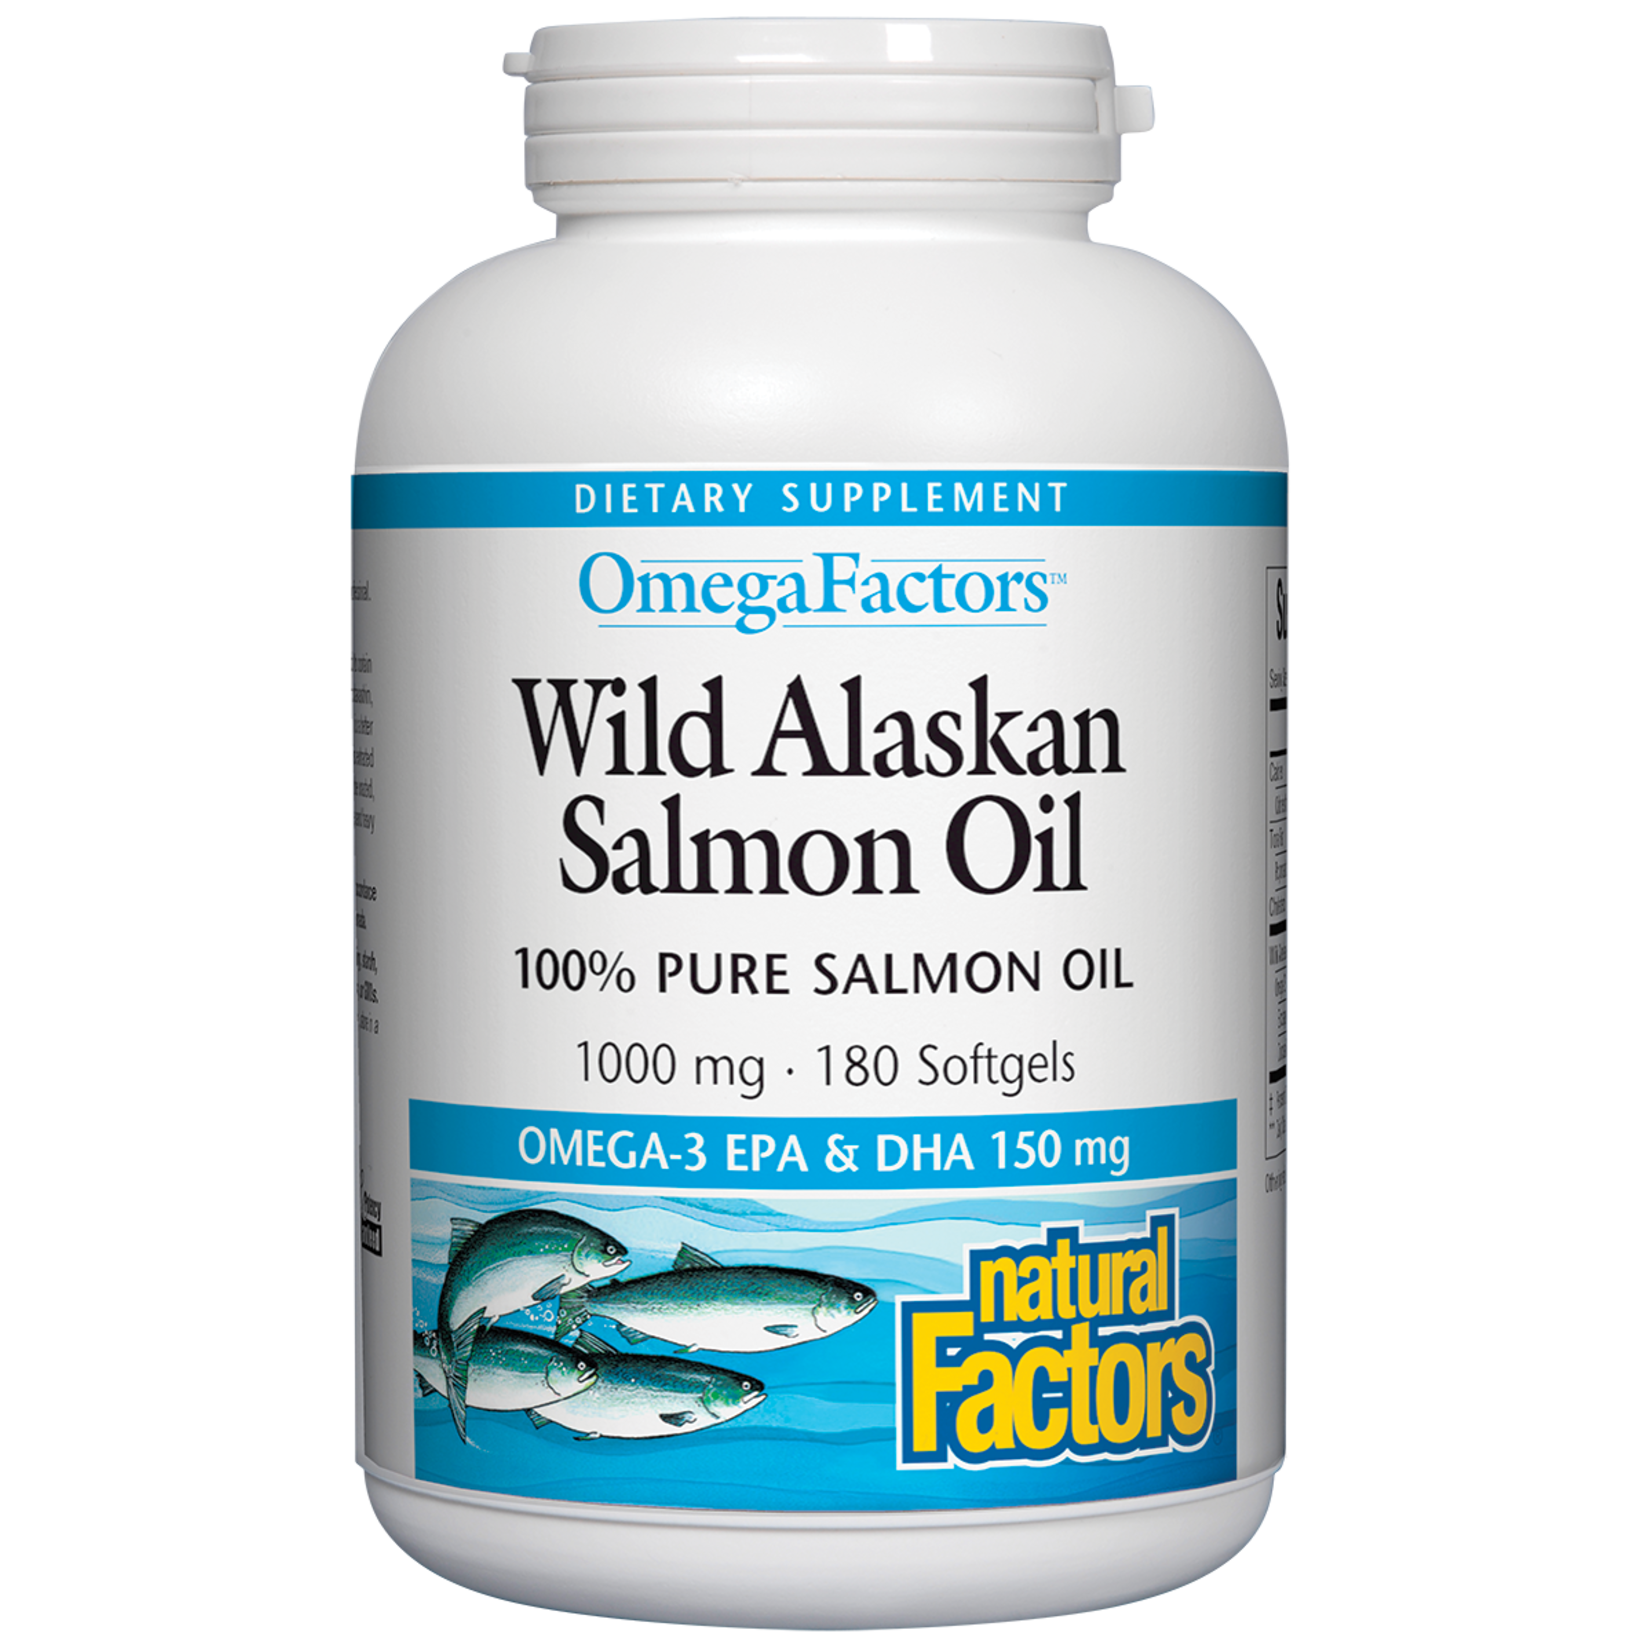 Natural Factors Natural Factors - Wild Alaskan Salmon Oil 1000 mg - 180 Softgels